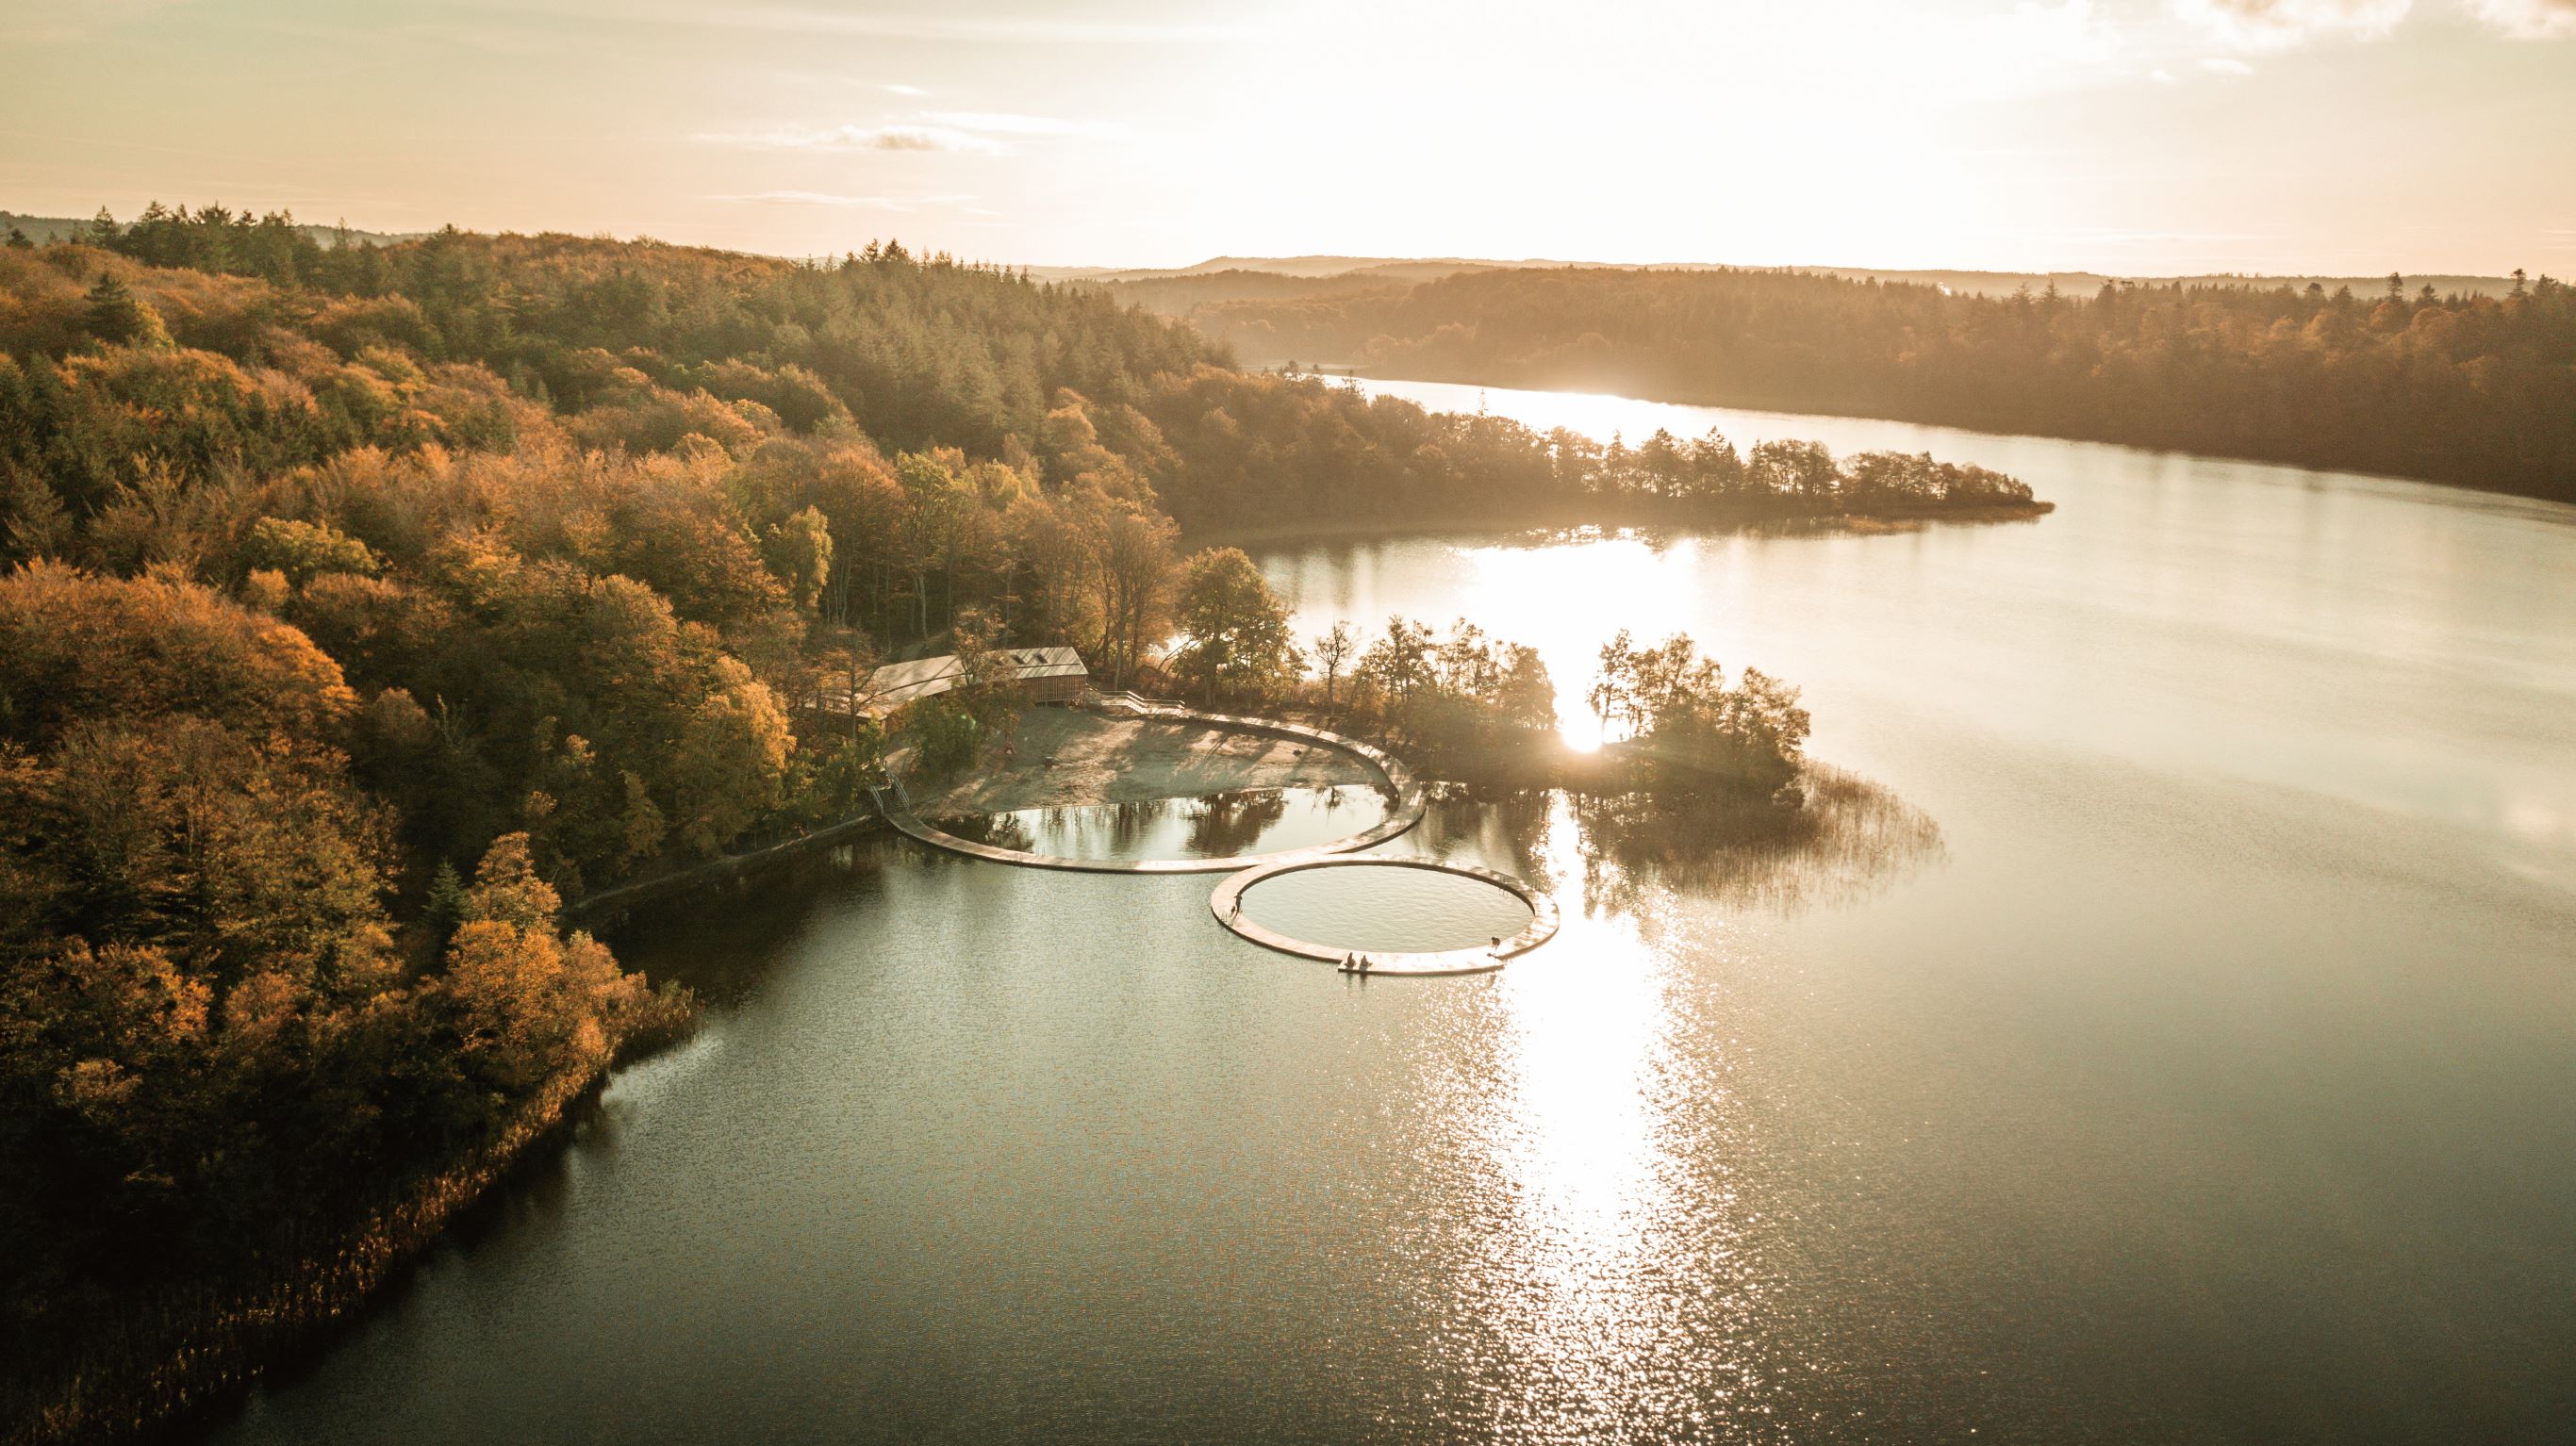 座落在湖光山色间的 Eastern and Western Bathing Resort，以环形桥梁框出大湖泊中的小湖泊，让整个浴场自然融入周遭景观中。